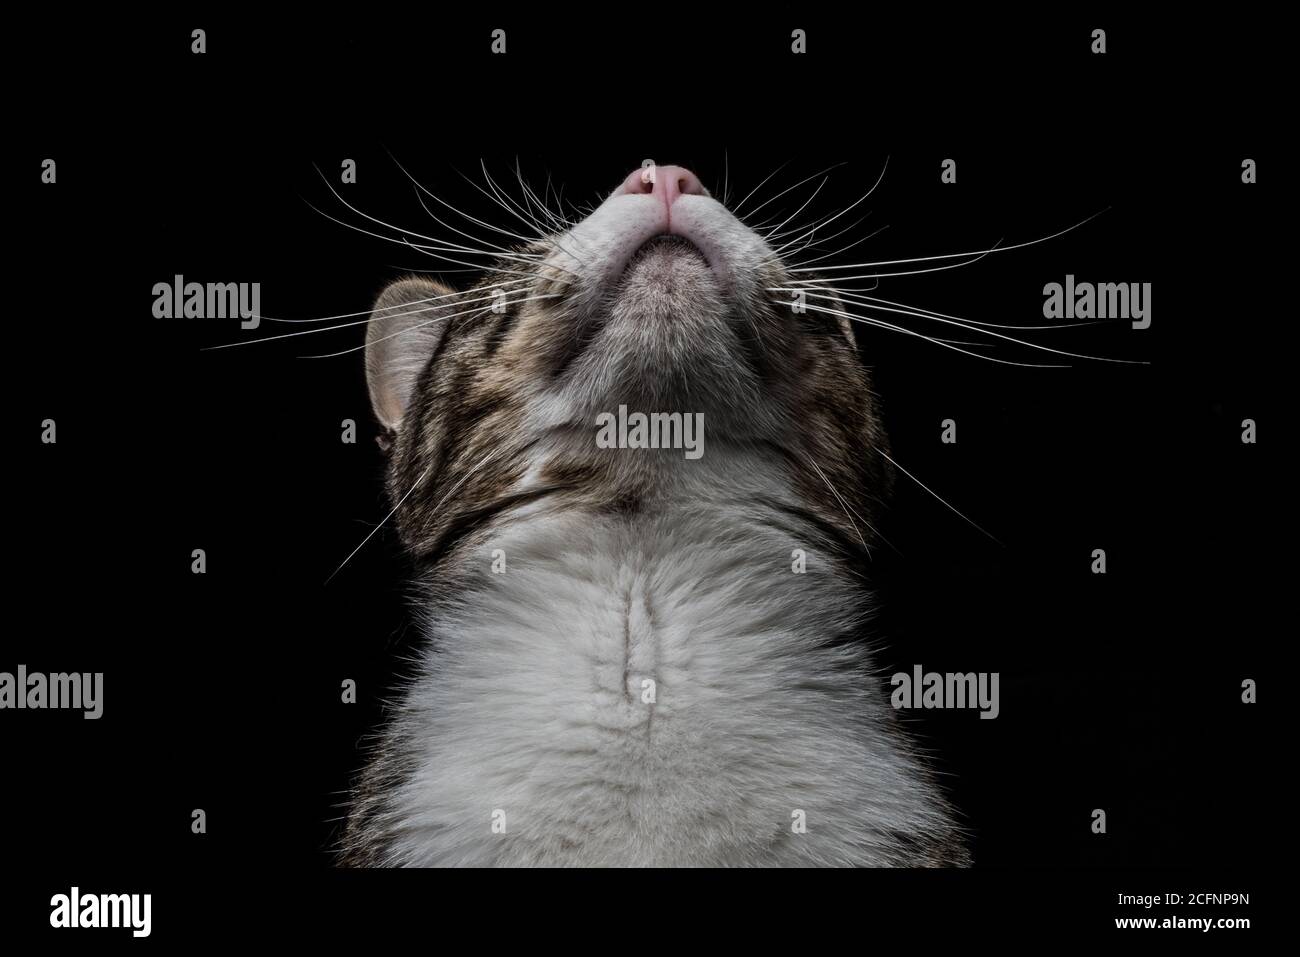 Un chat tabby regarde droit vers le haut montrant son menton et des whiskers. Banque D'Images